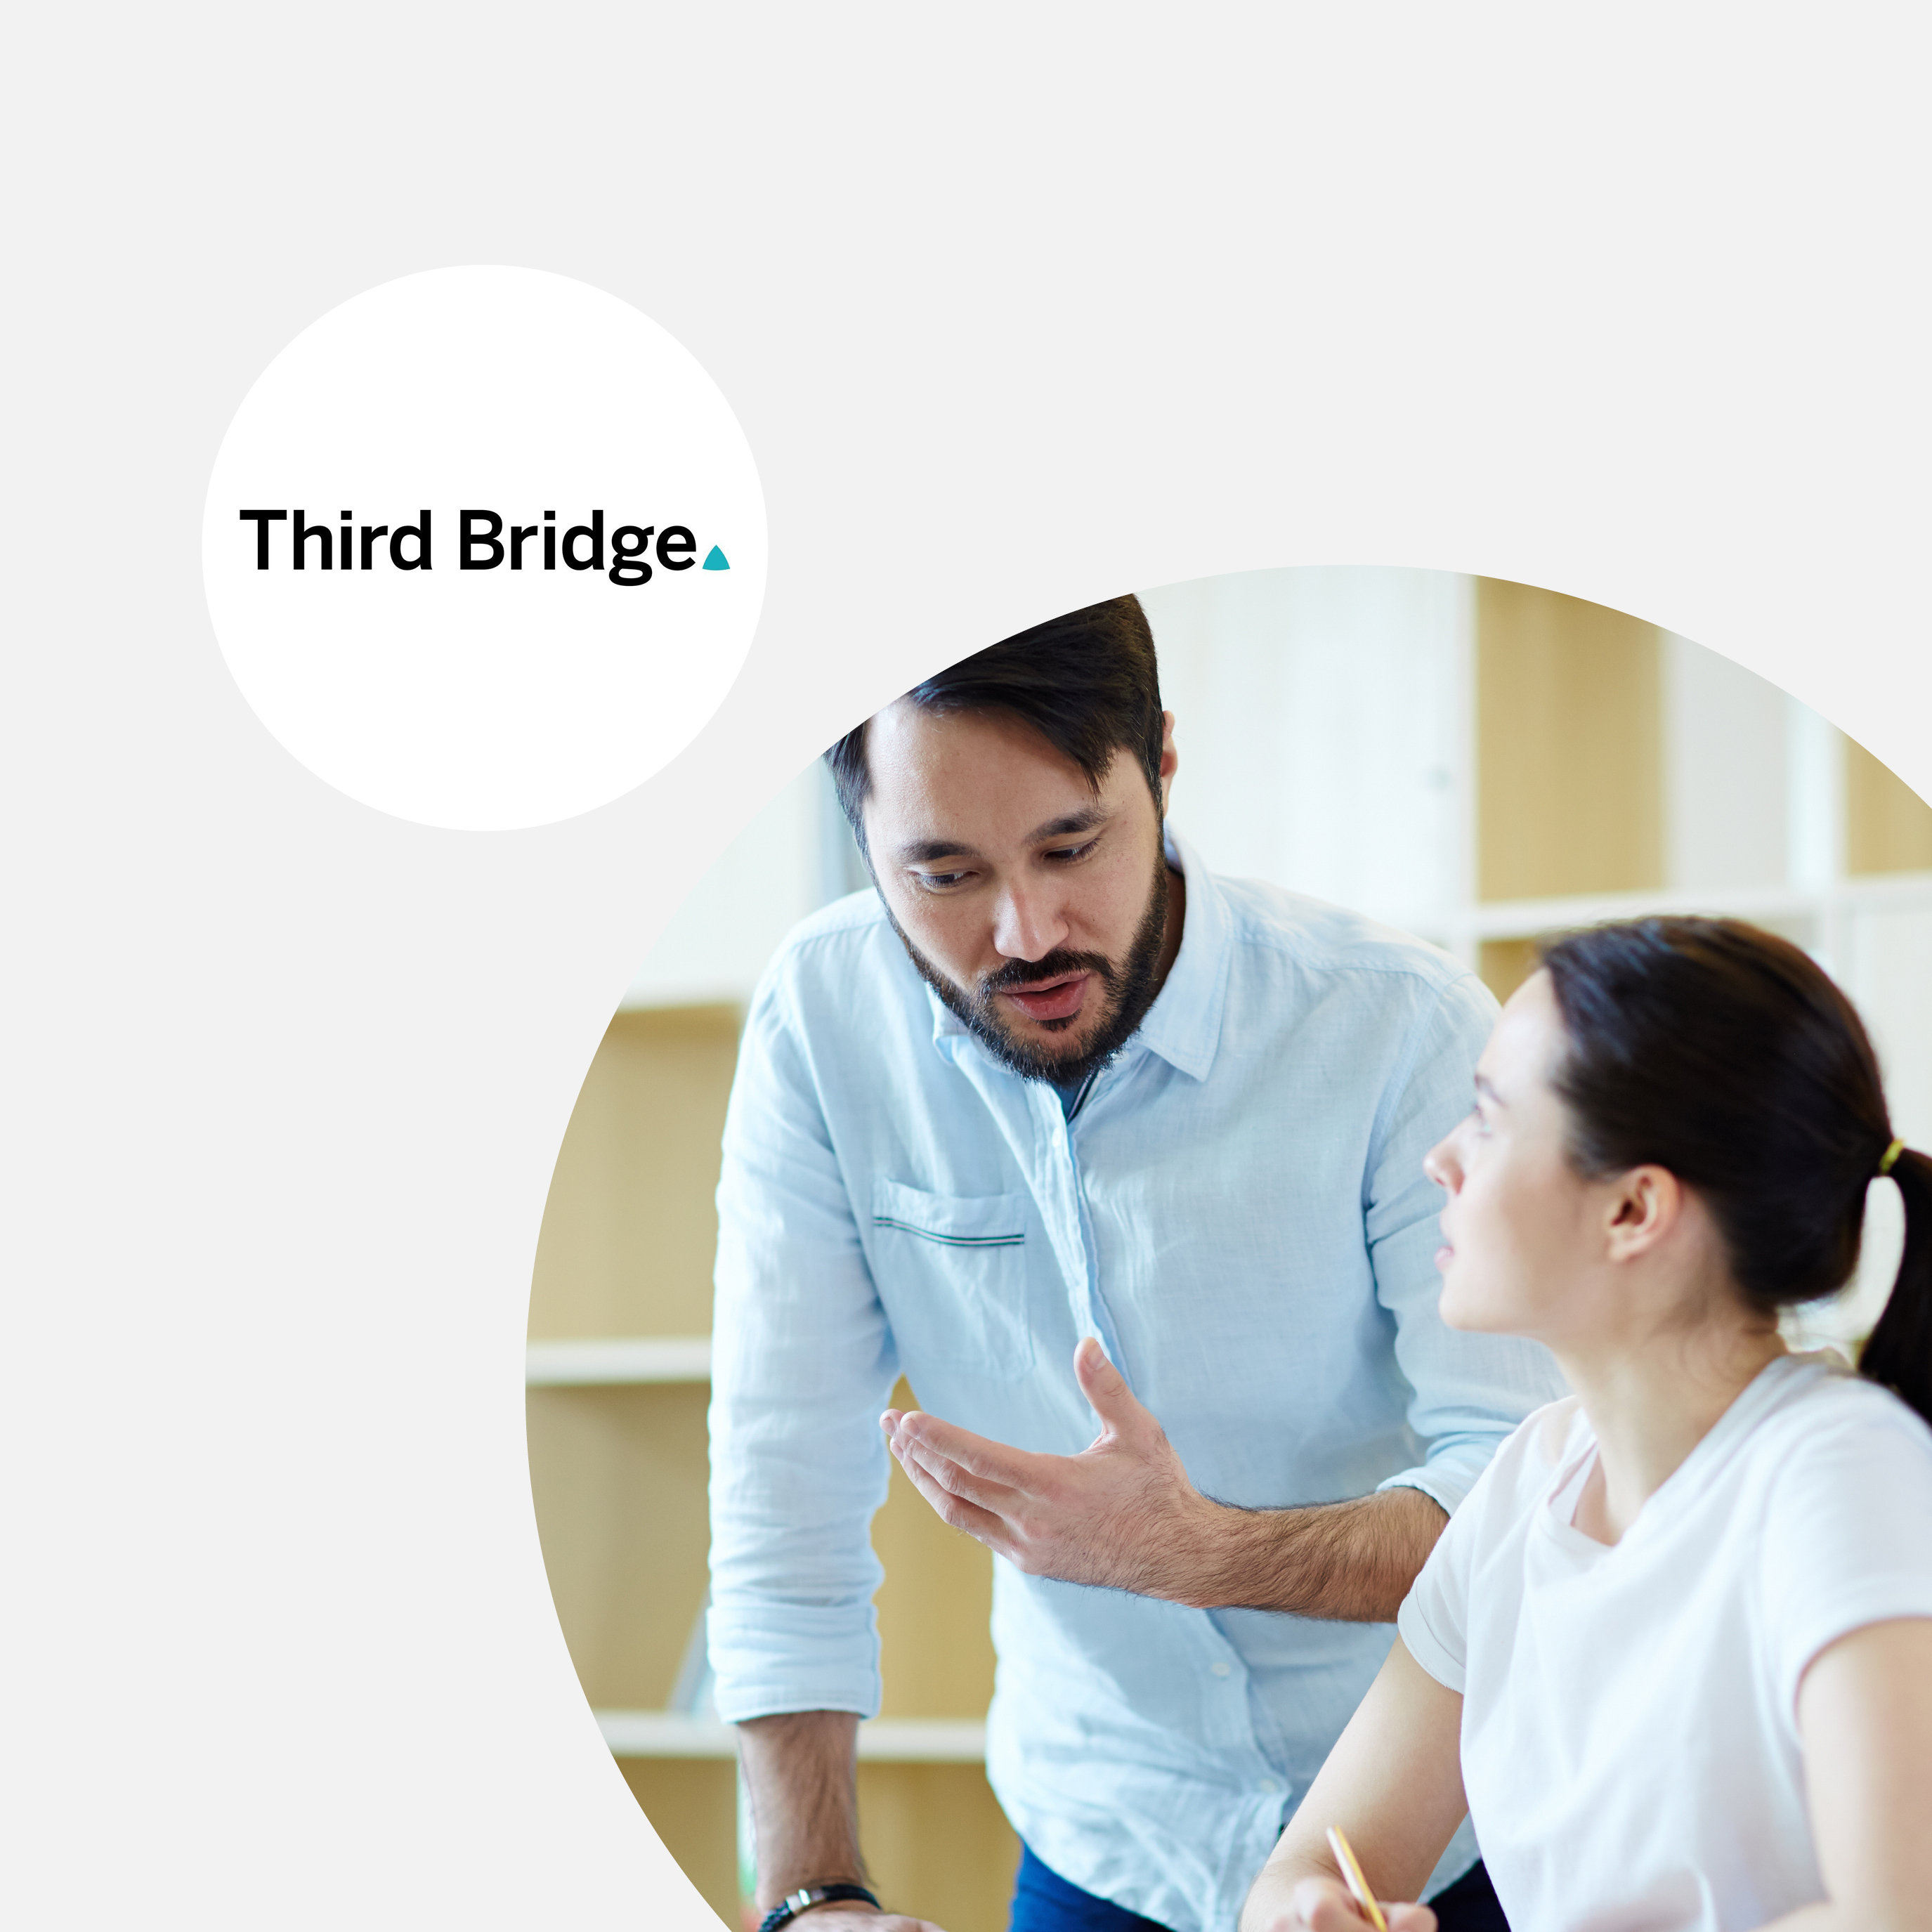 Third Bridge Uses Employee Feedback